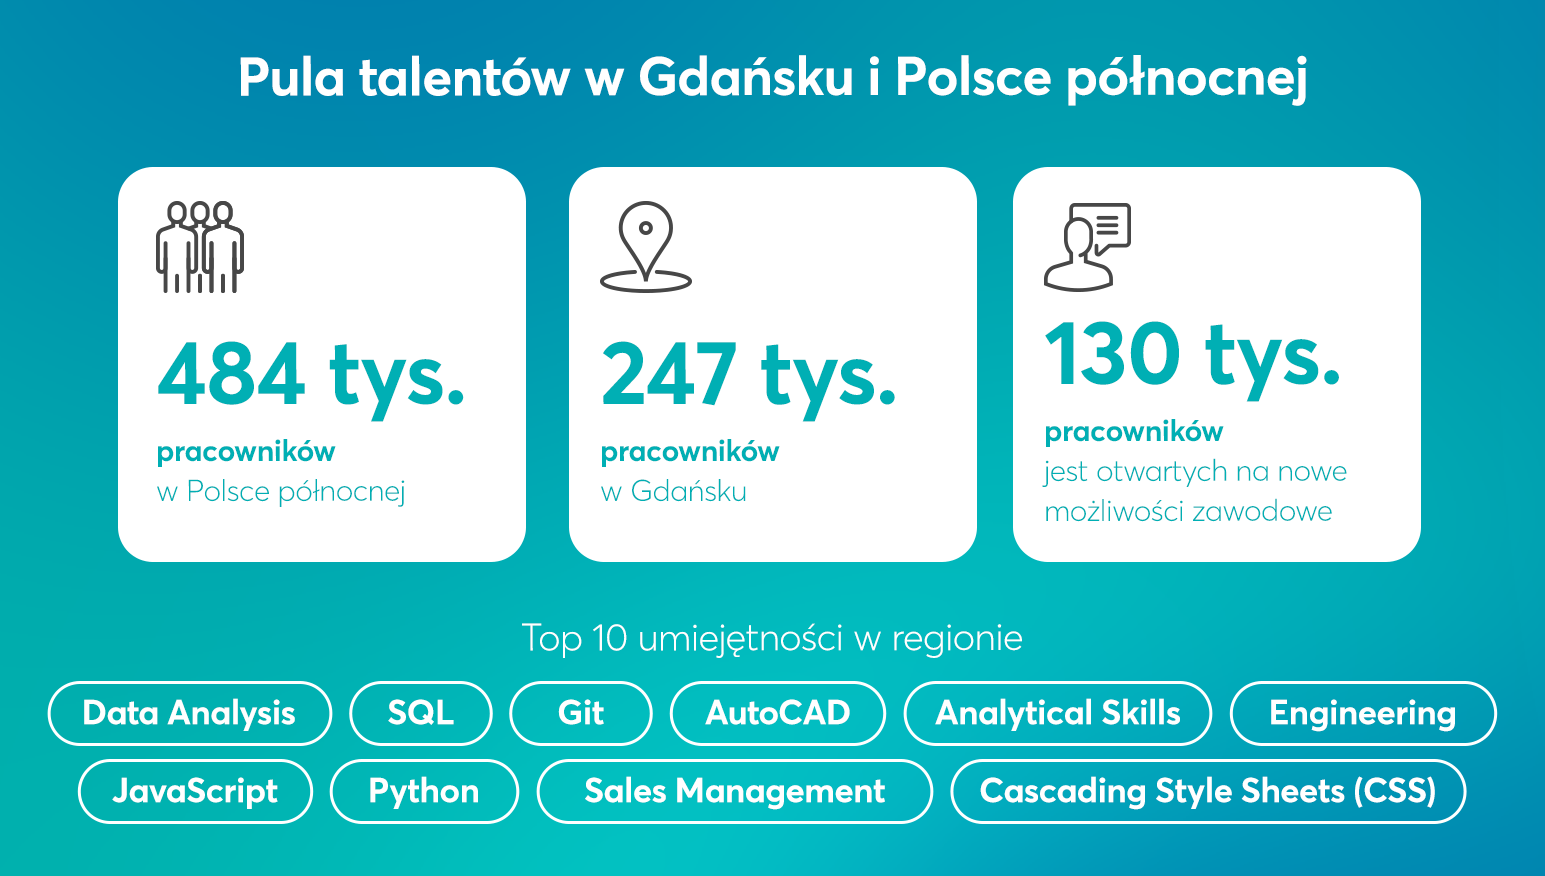 Pula talentów w Gdańsku i Polsce północnej - infografika